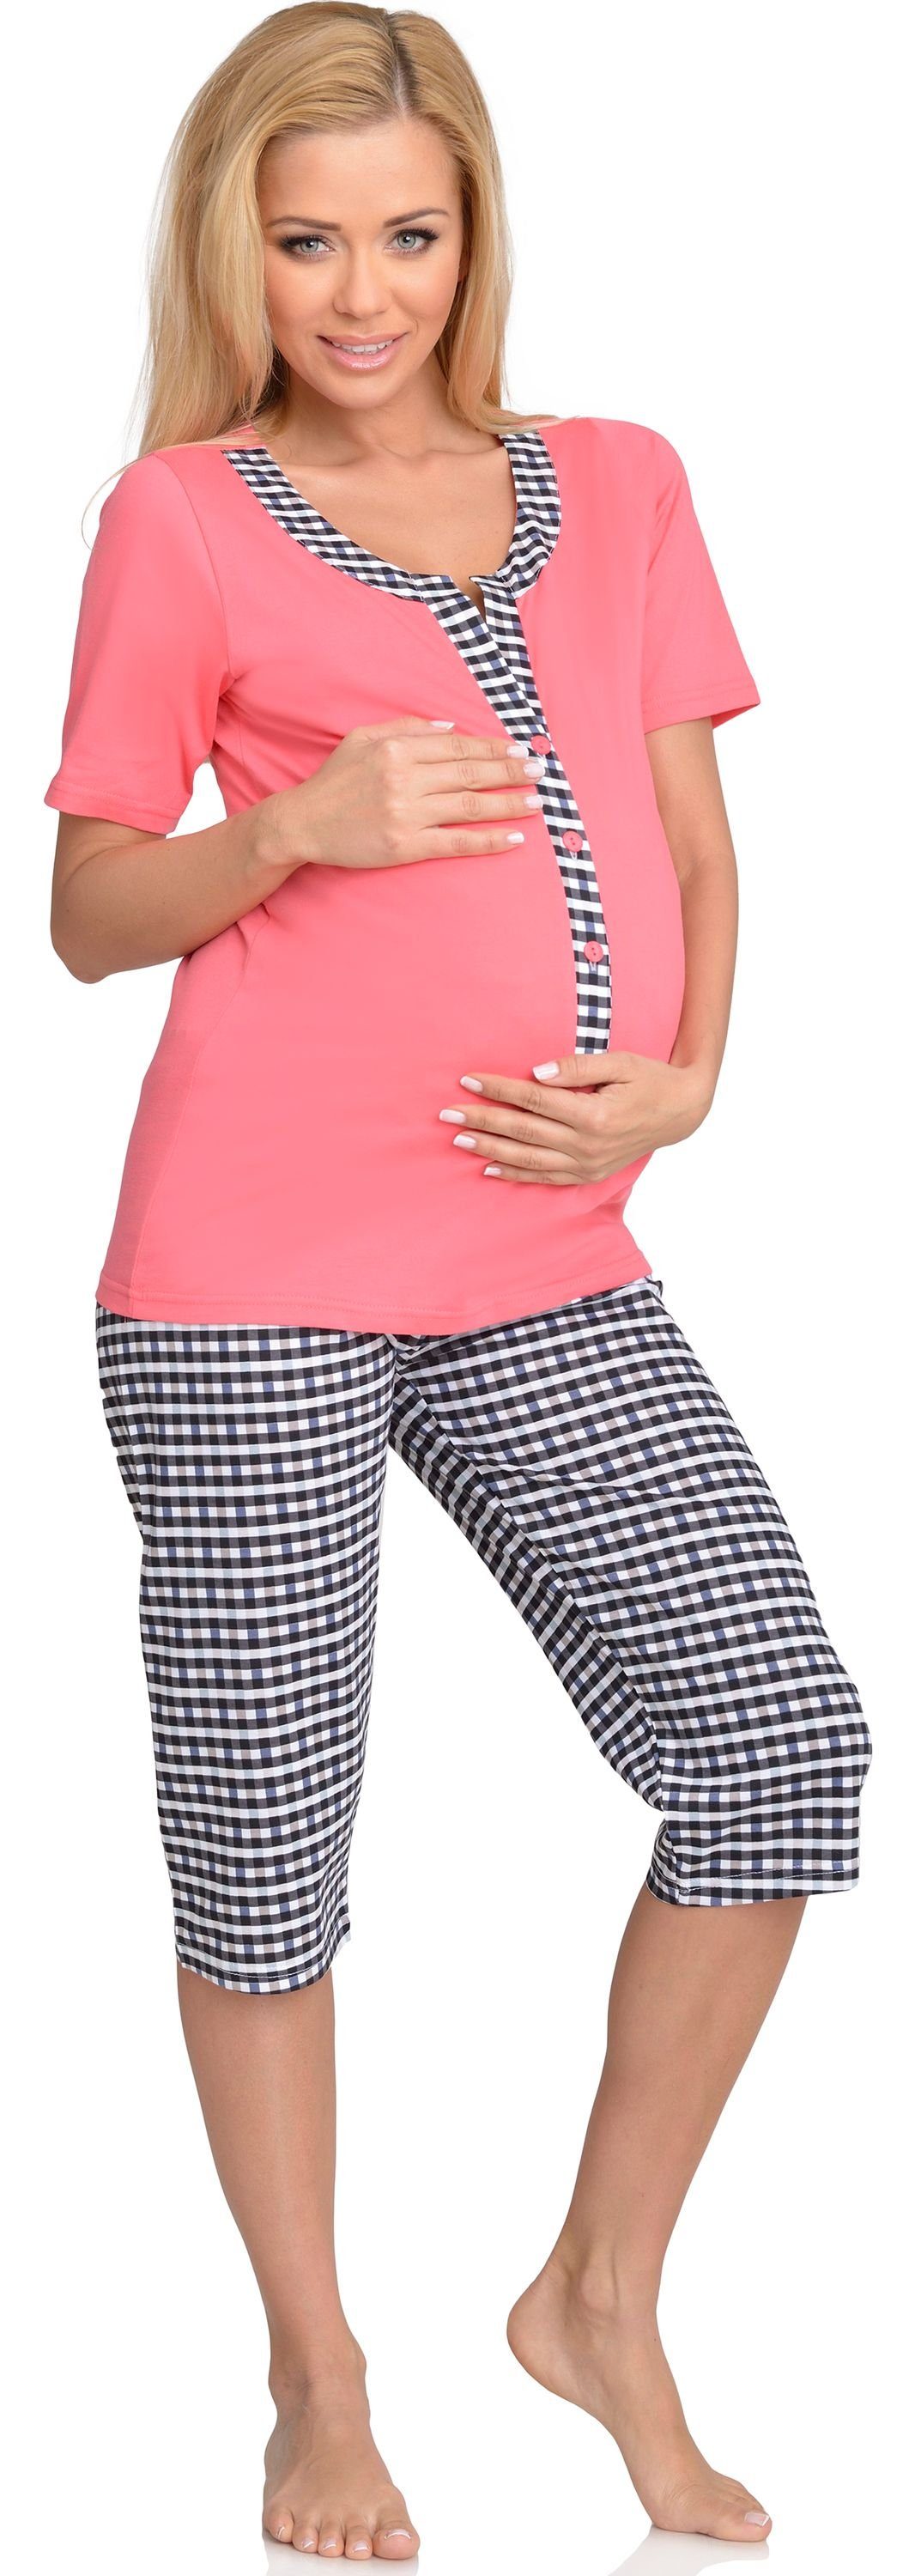 Be Mammy Umstandspyjama Damen Schlafanzug Coral-1 Stillpyjama H2L2N2